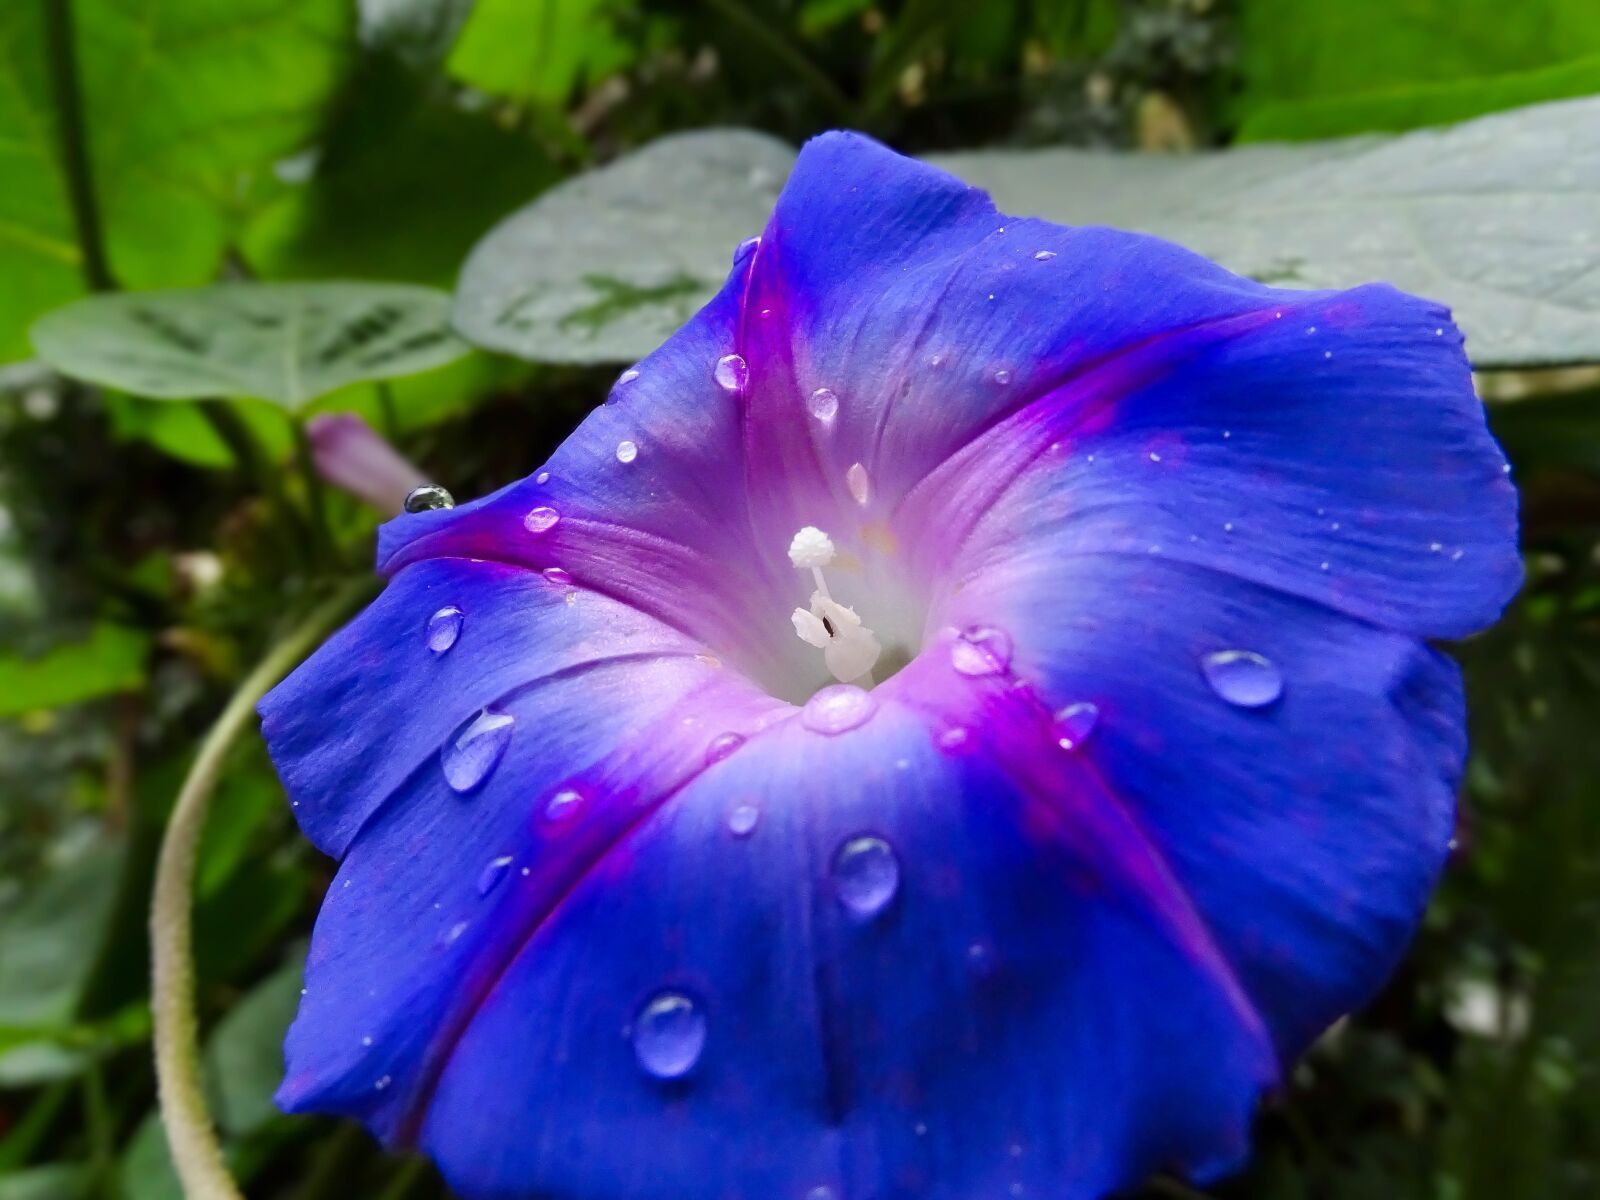 Sony Cyber-shot DSC-HX350 sample photo. Flor, flores, blue photography